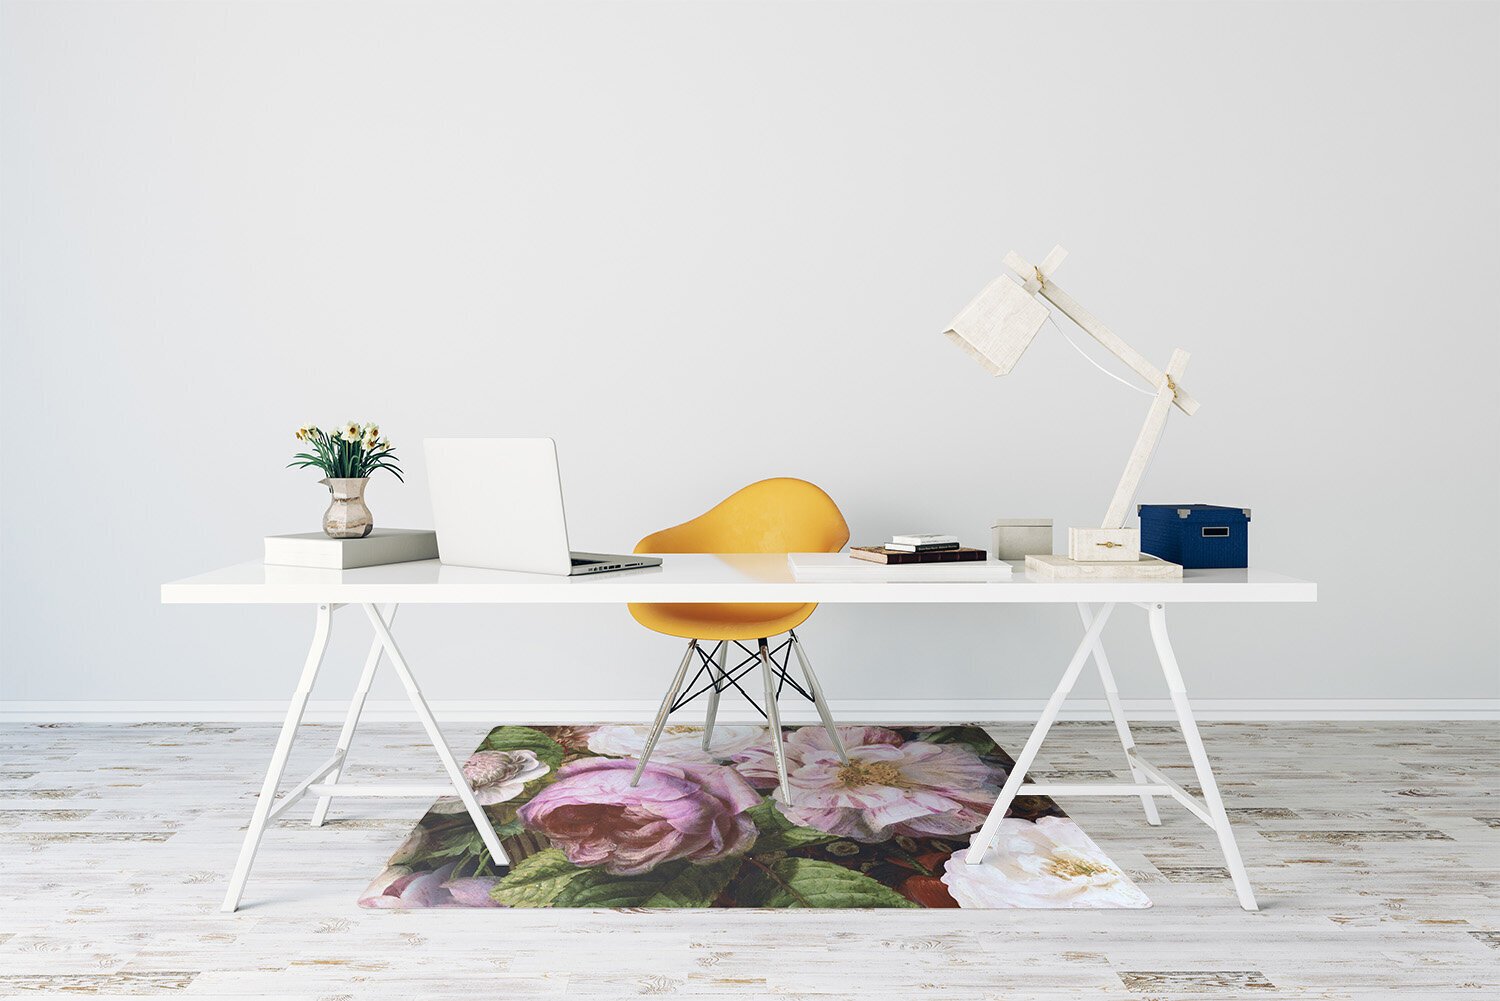 Apsauginis grindų kilimėlis Decormat Sodo rožės, įvairių spalvų kaina ir informacija | Biuro kėdės | pigu.lt